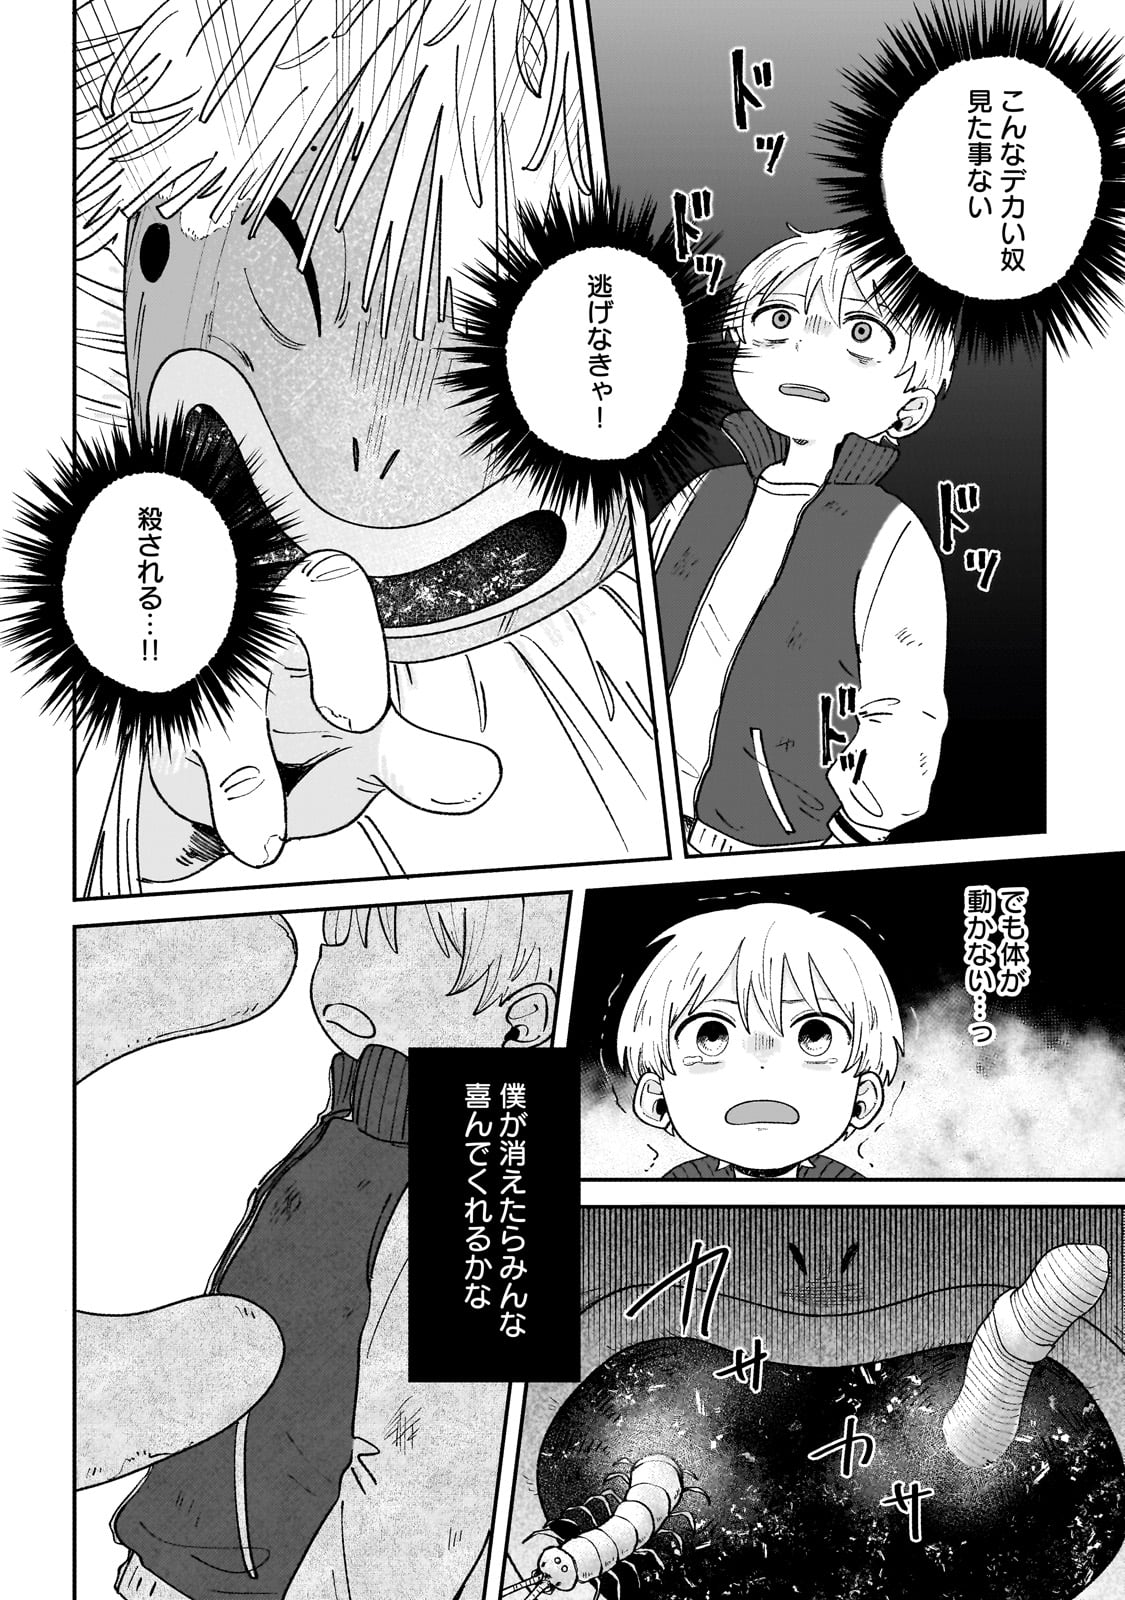 Boku to Ayakashi no 365 Nichi - Chapter 1 - Page 16